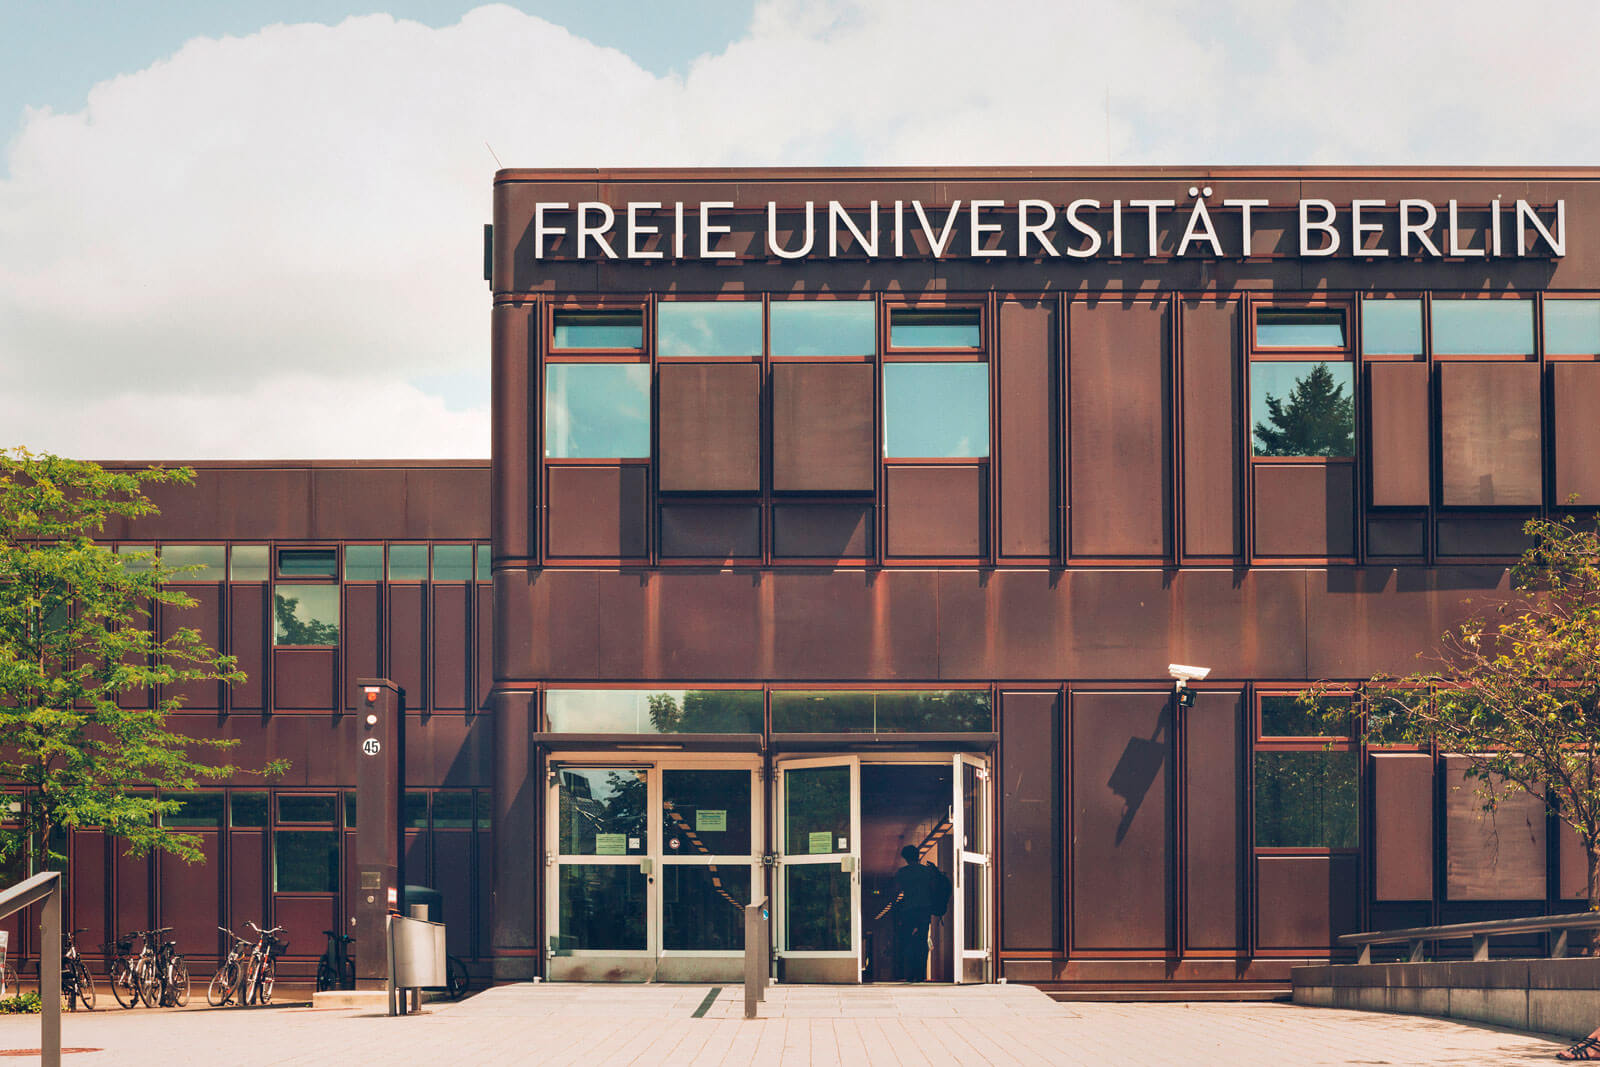 Freie Universität Berlin - بهین آتیه